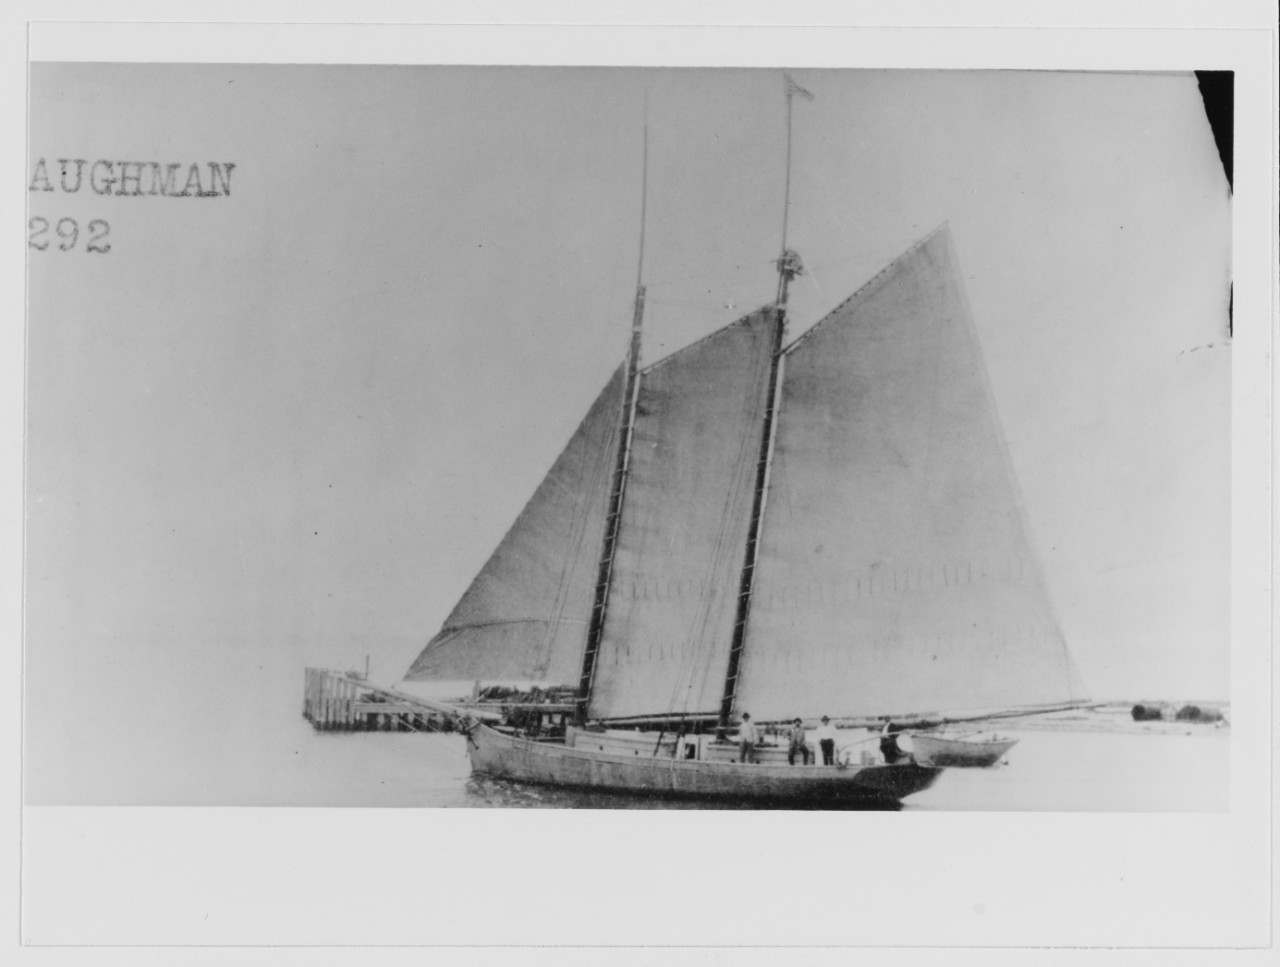 HELEN BAUGHMAN (U.S. schooner, 1894)